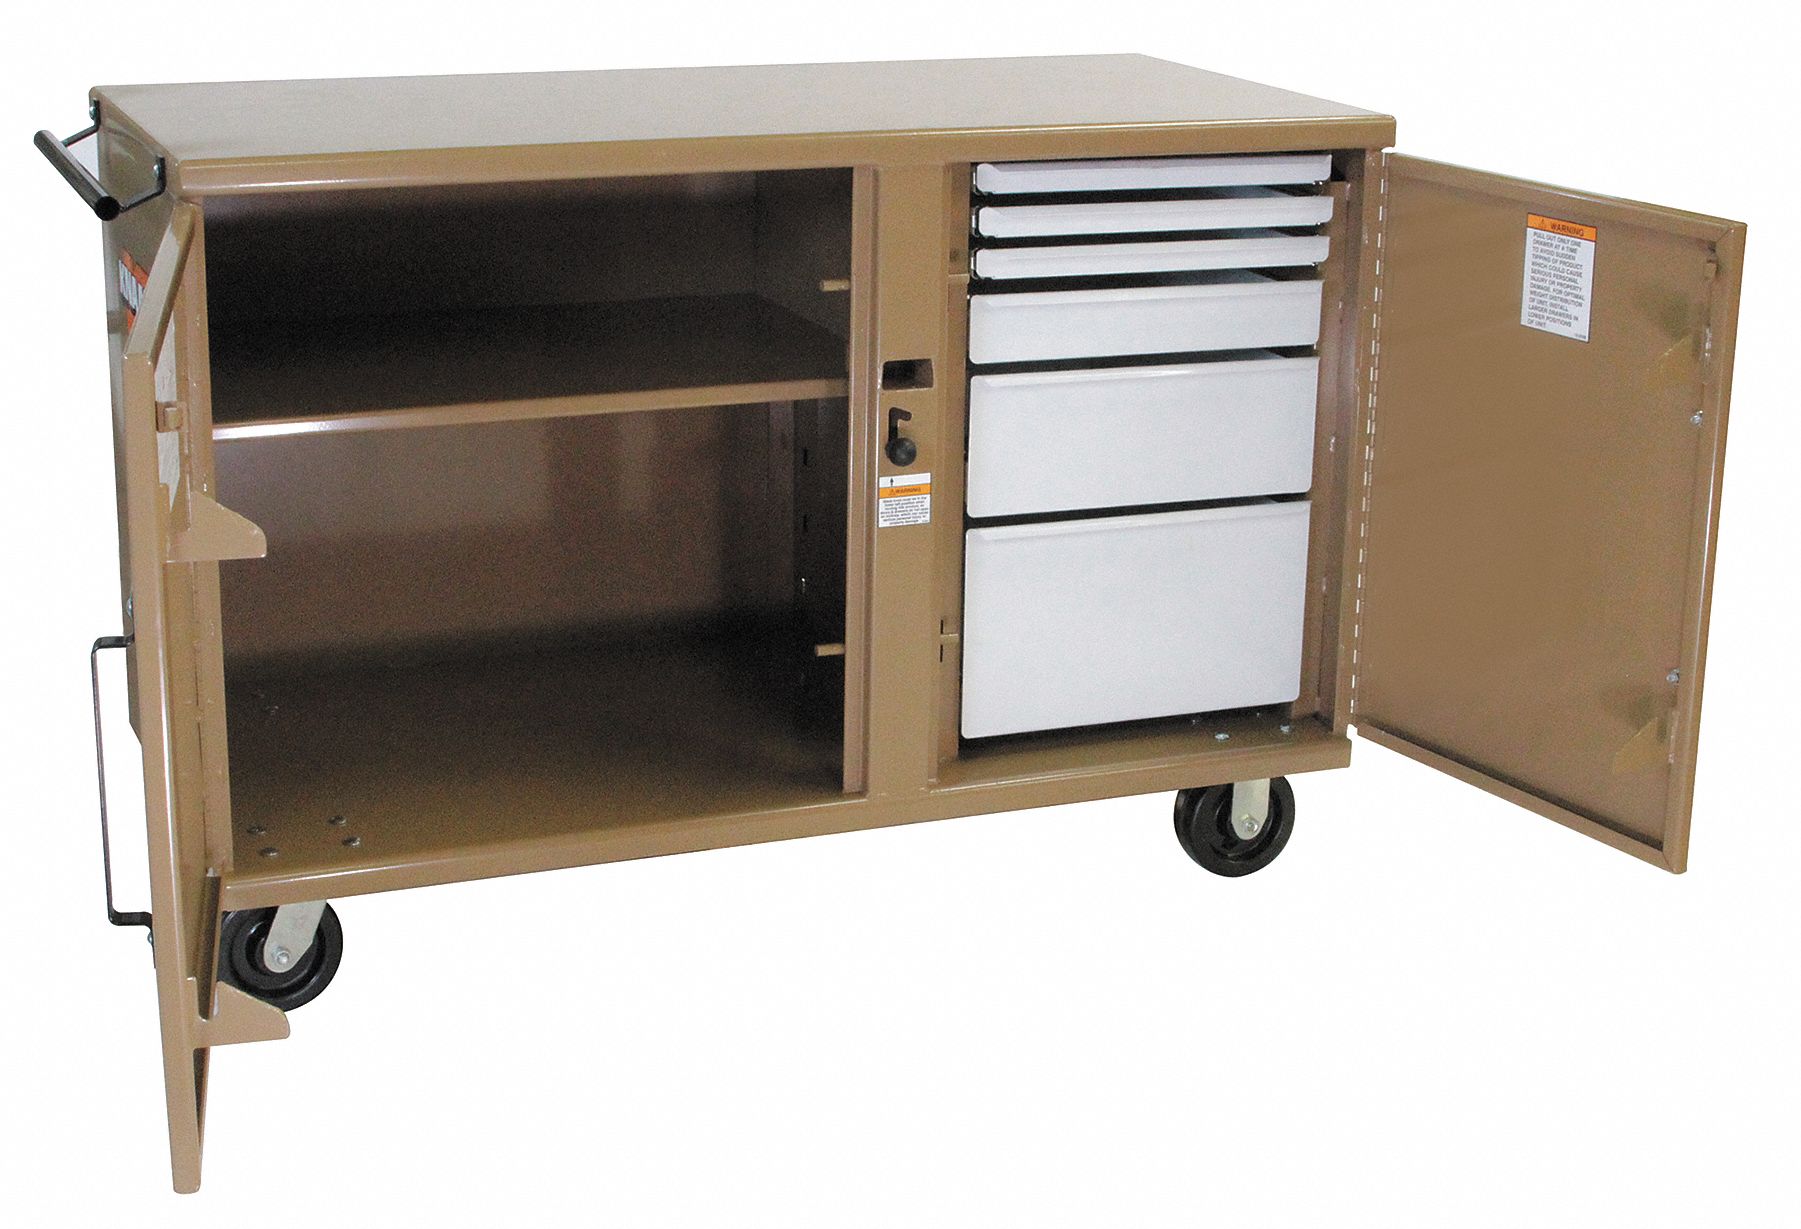 KNAACK Mobile Cabinet Workbench, Steel, 26 in Depth, 37 3 